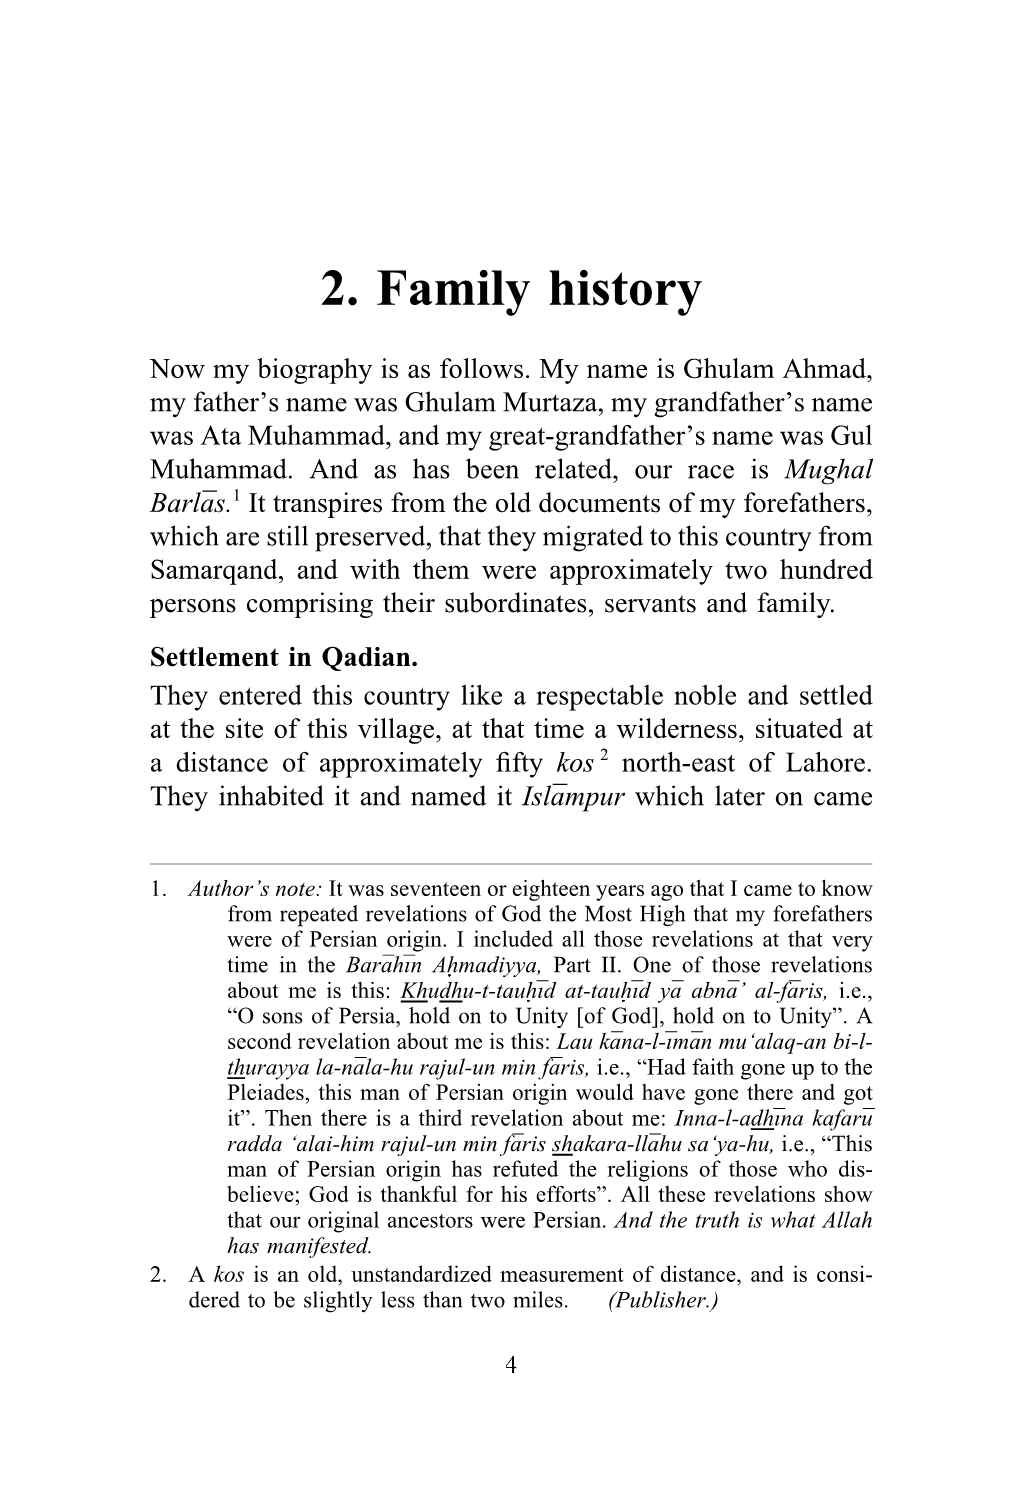 2. Family History